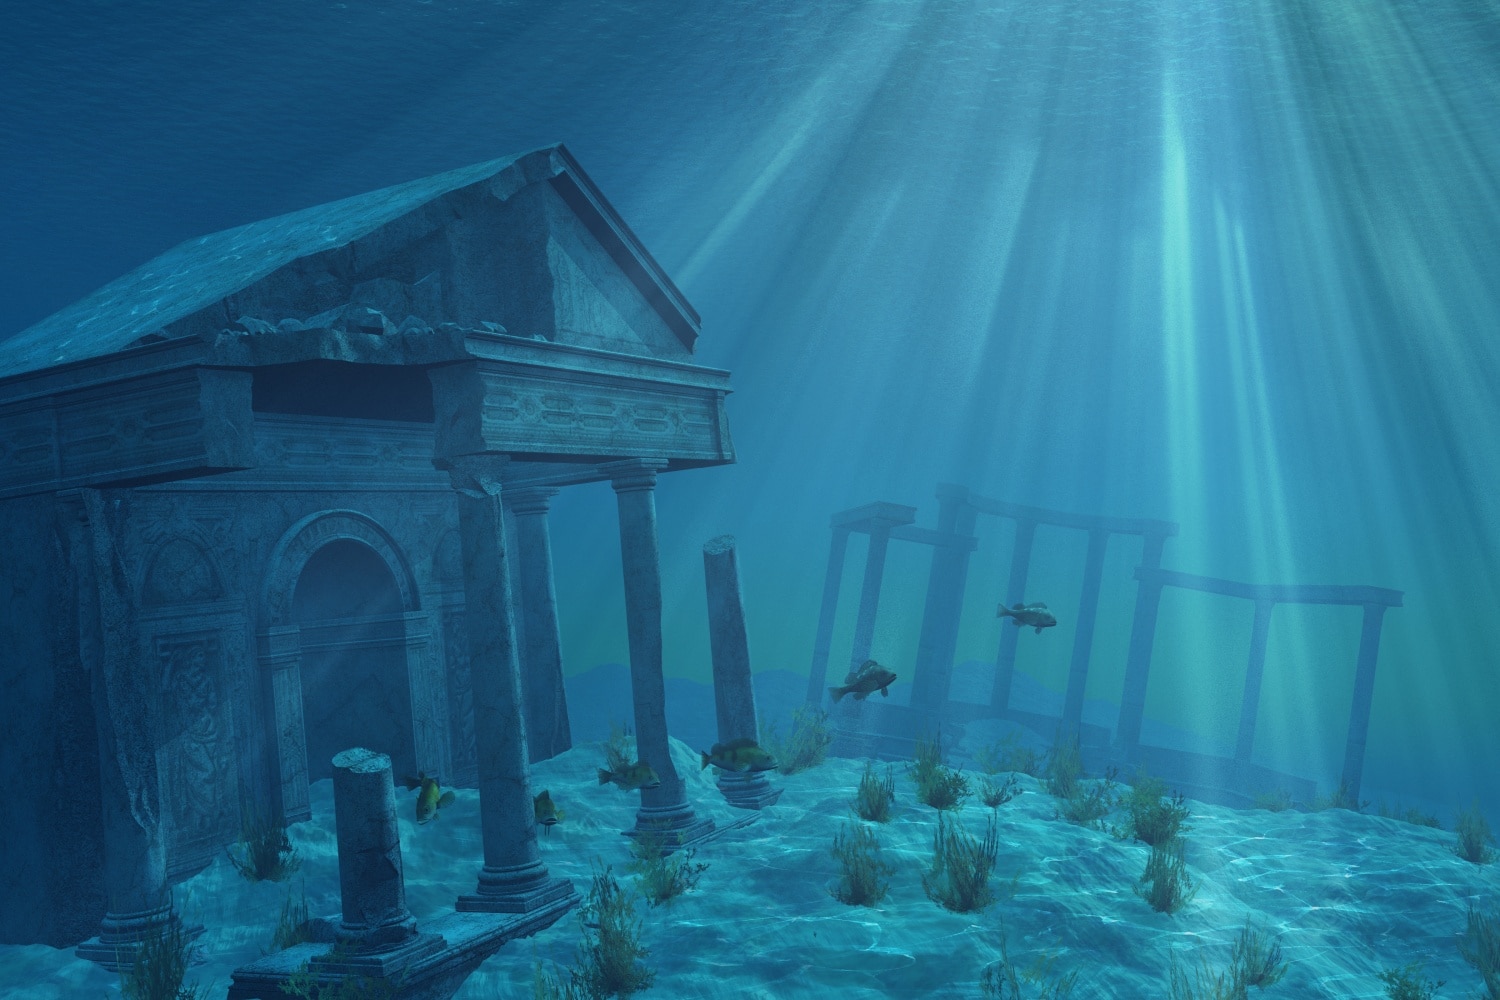 Megfejtették a titkot! Ilyen volt az élet Atlantiszon